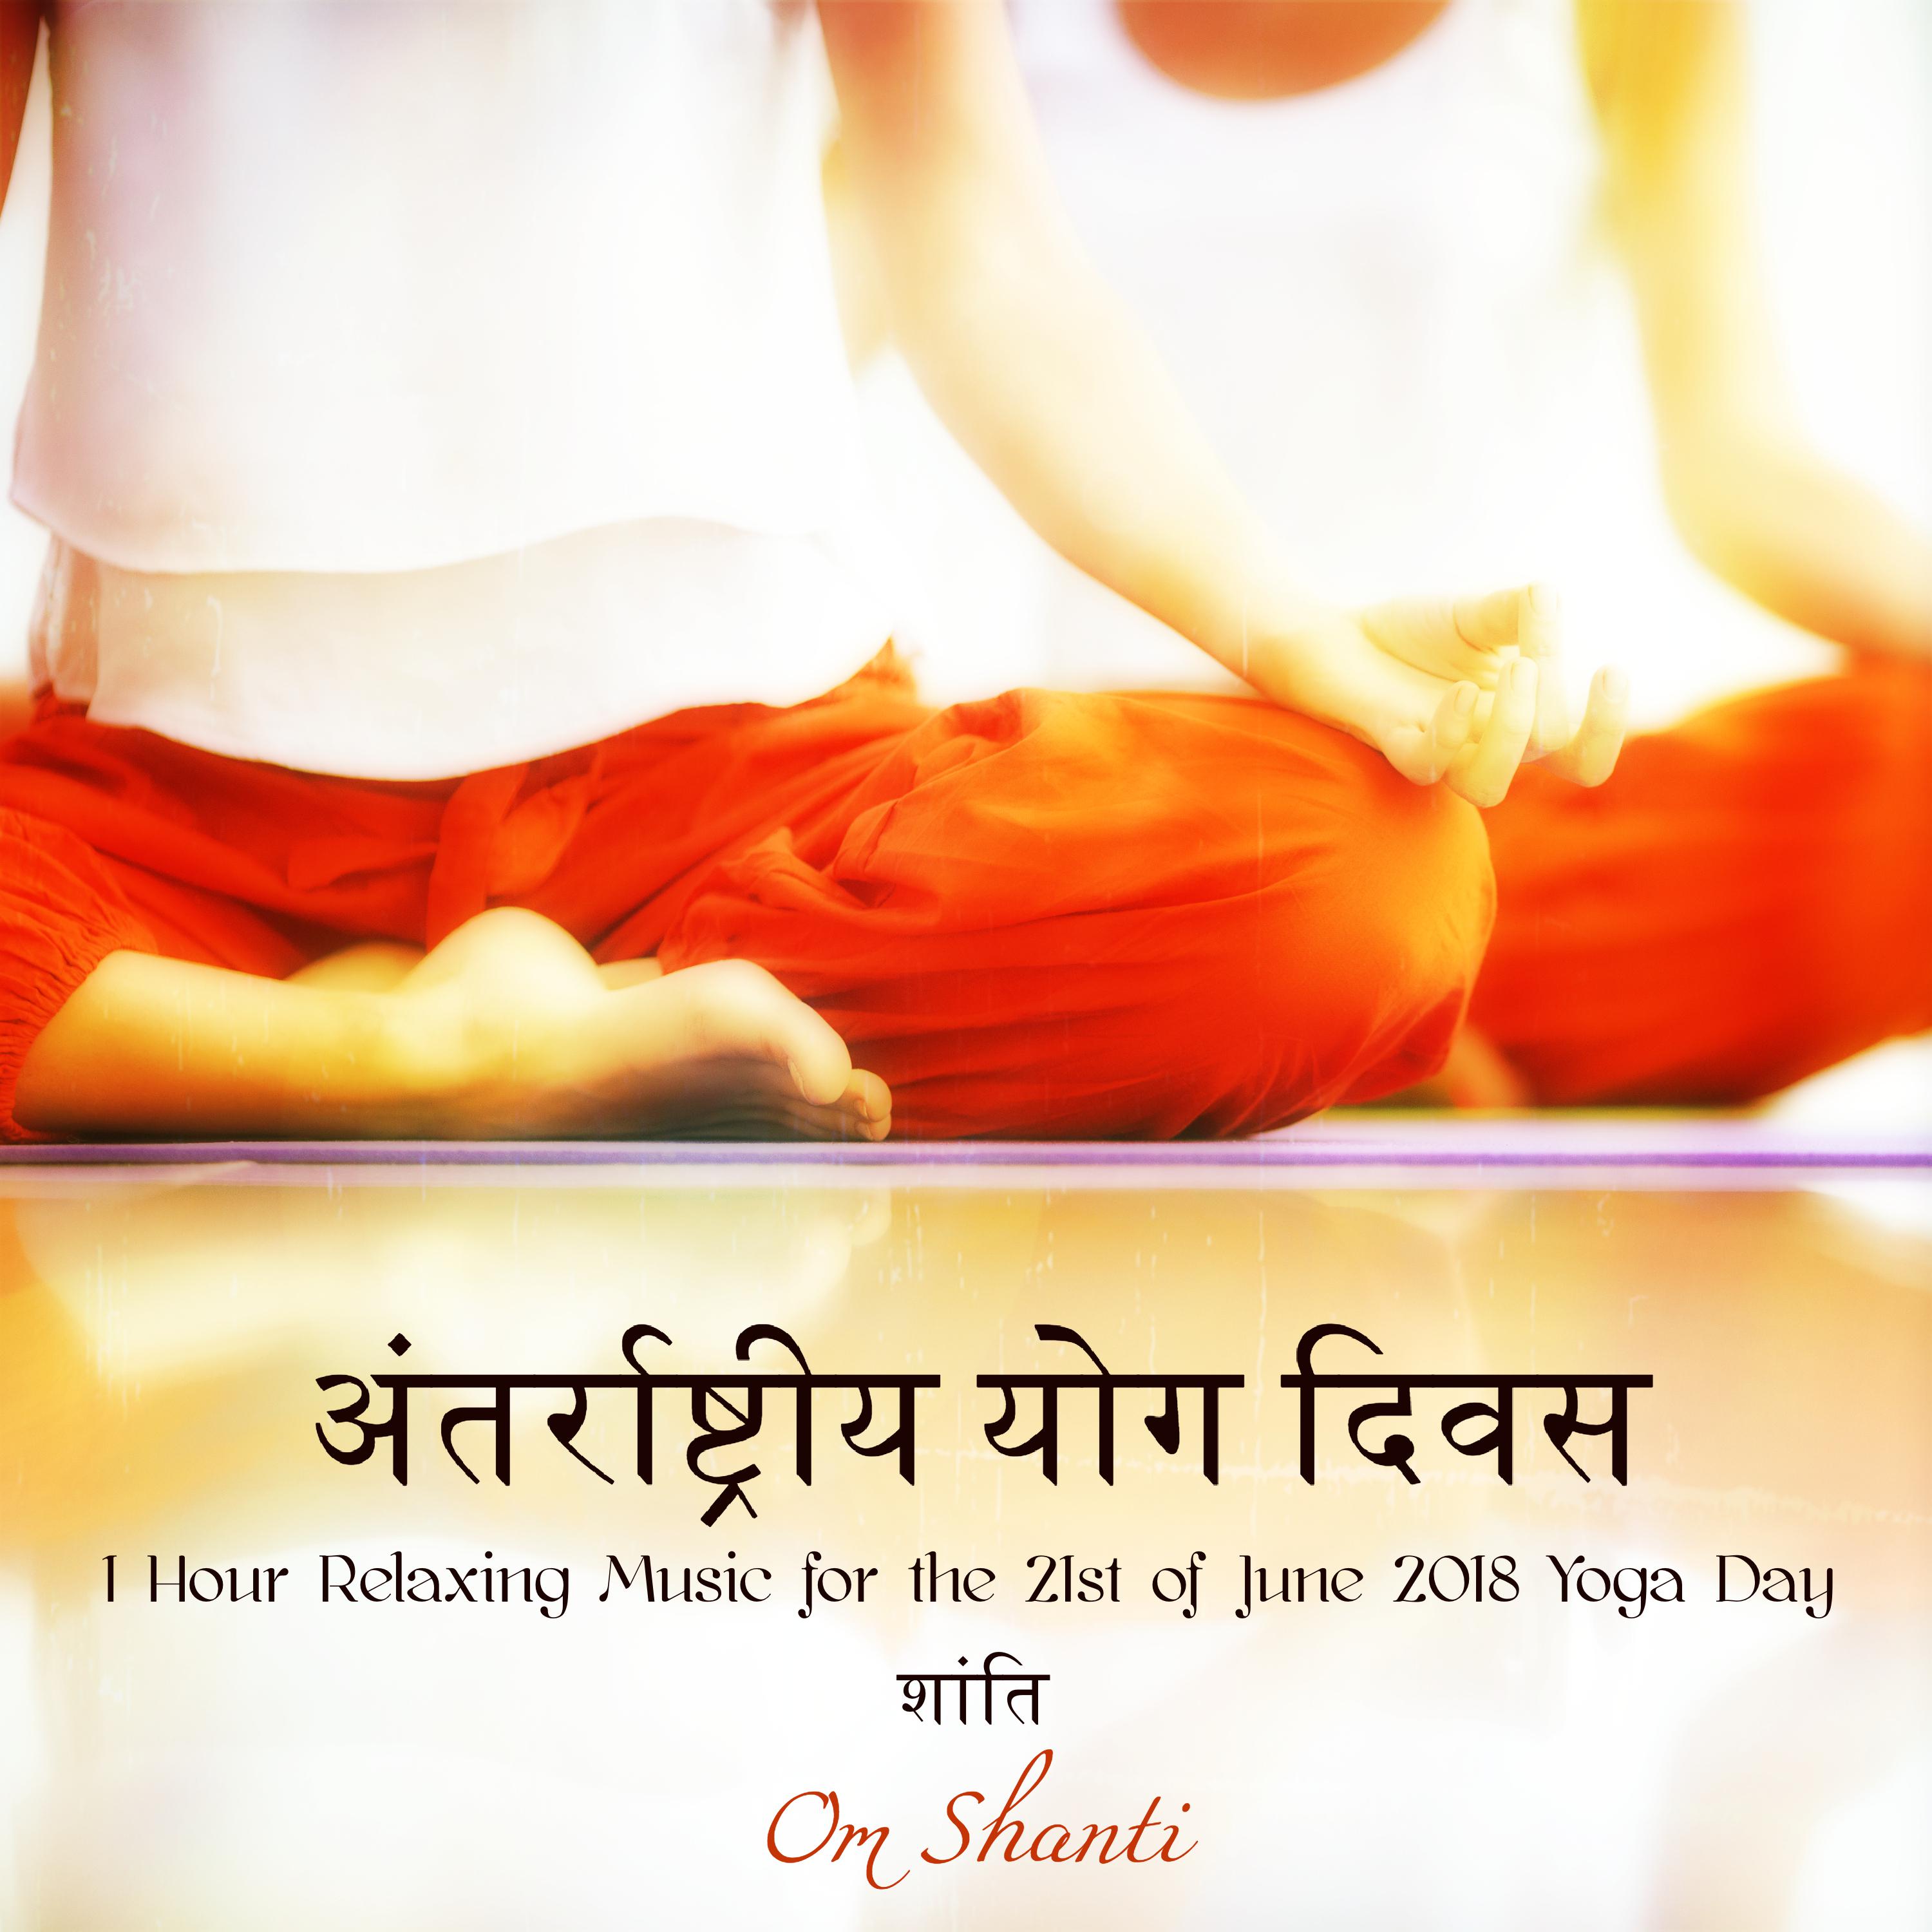 अंतर्राष्ट्रीय योग दिवस – 1 Hour Relaxing Music for the 21st of June 2018 Yoga Day शांति Om Shanti